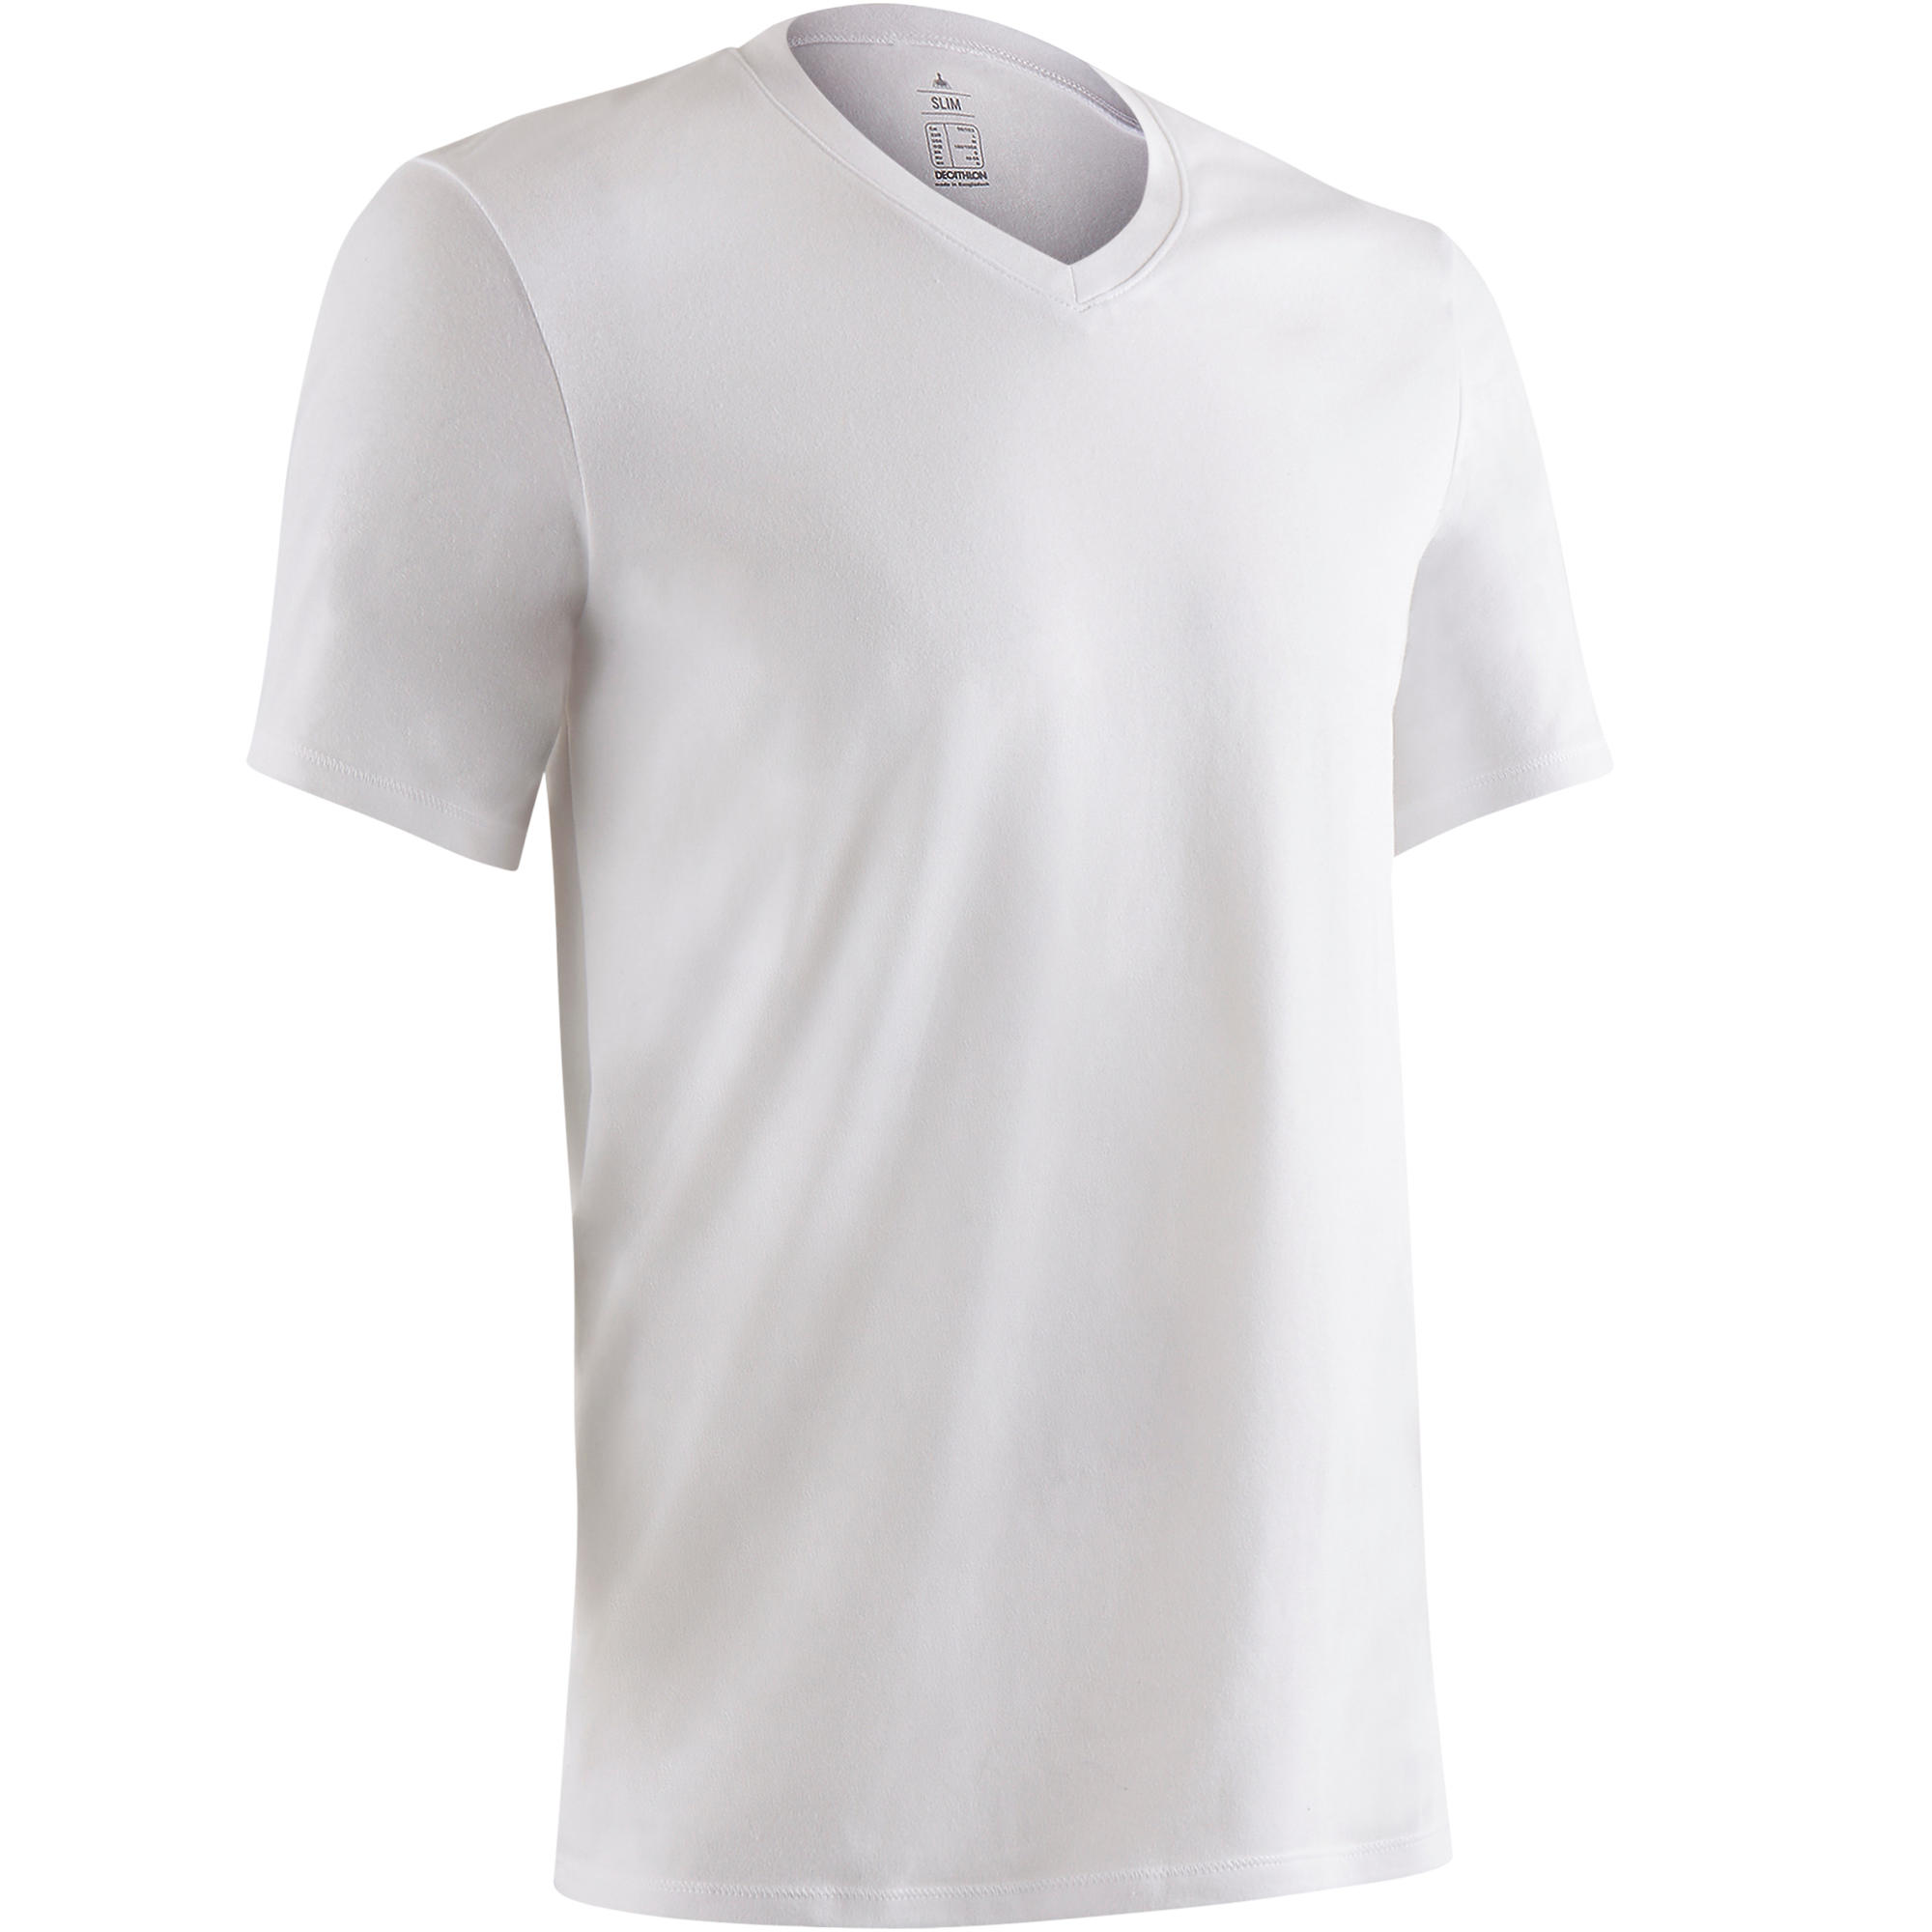 NYAMBA 500 Slim-Fit V-Neck Pilates & Gentle Gym T-Shirt - White